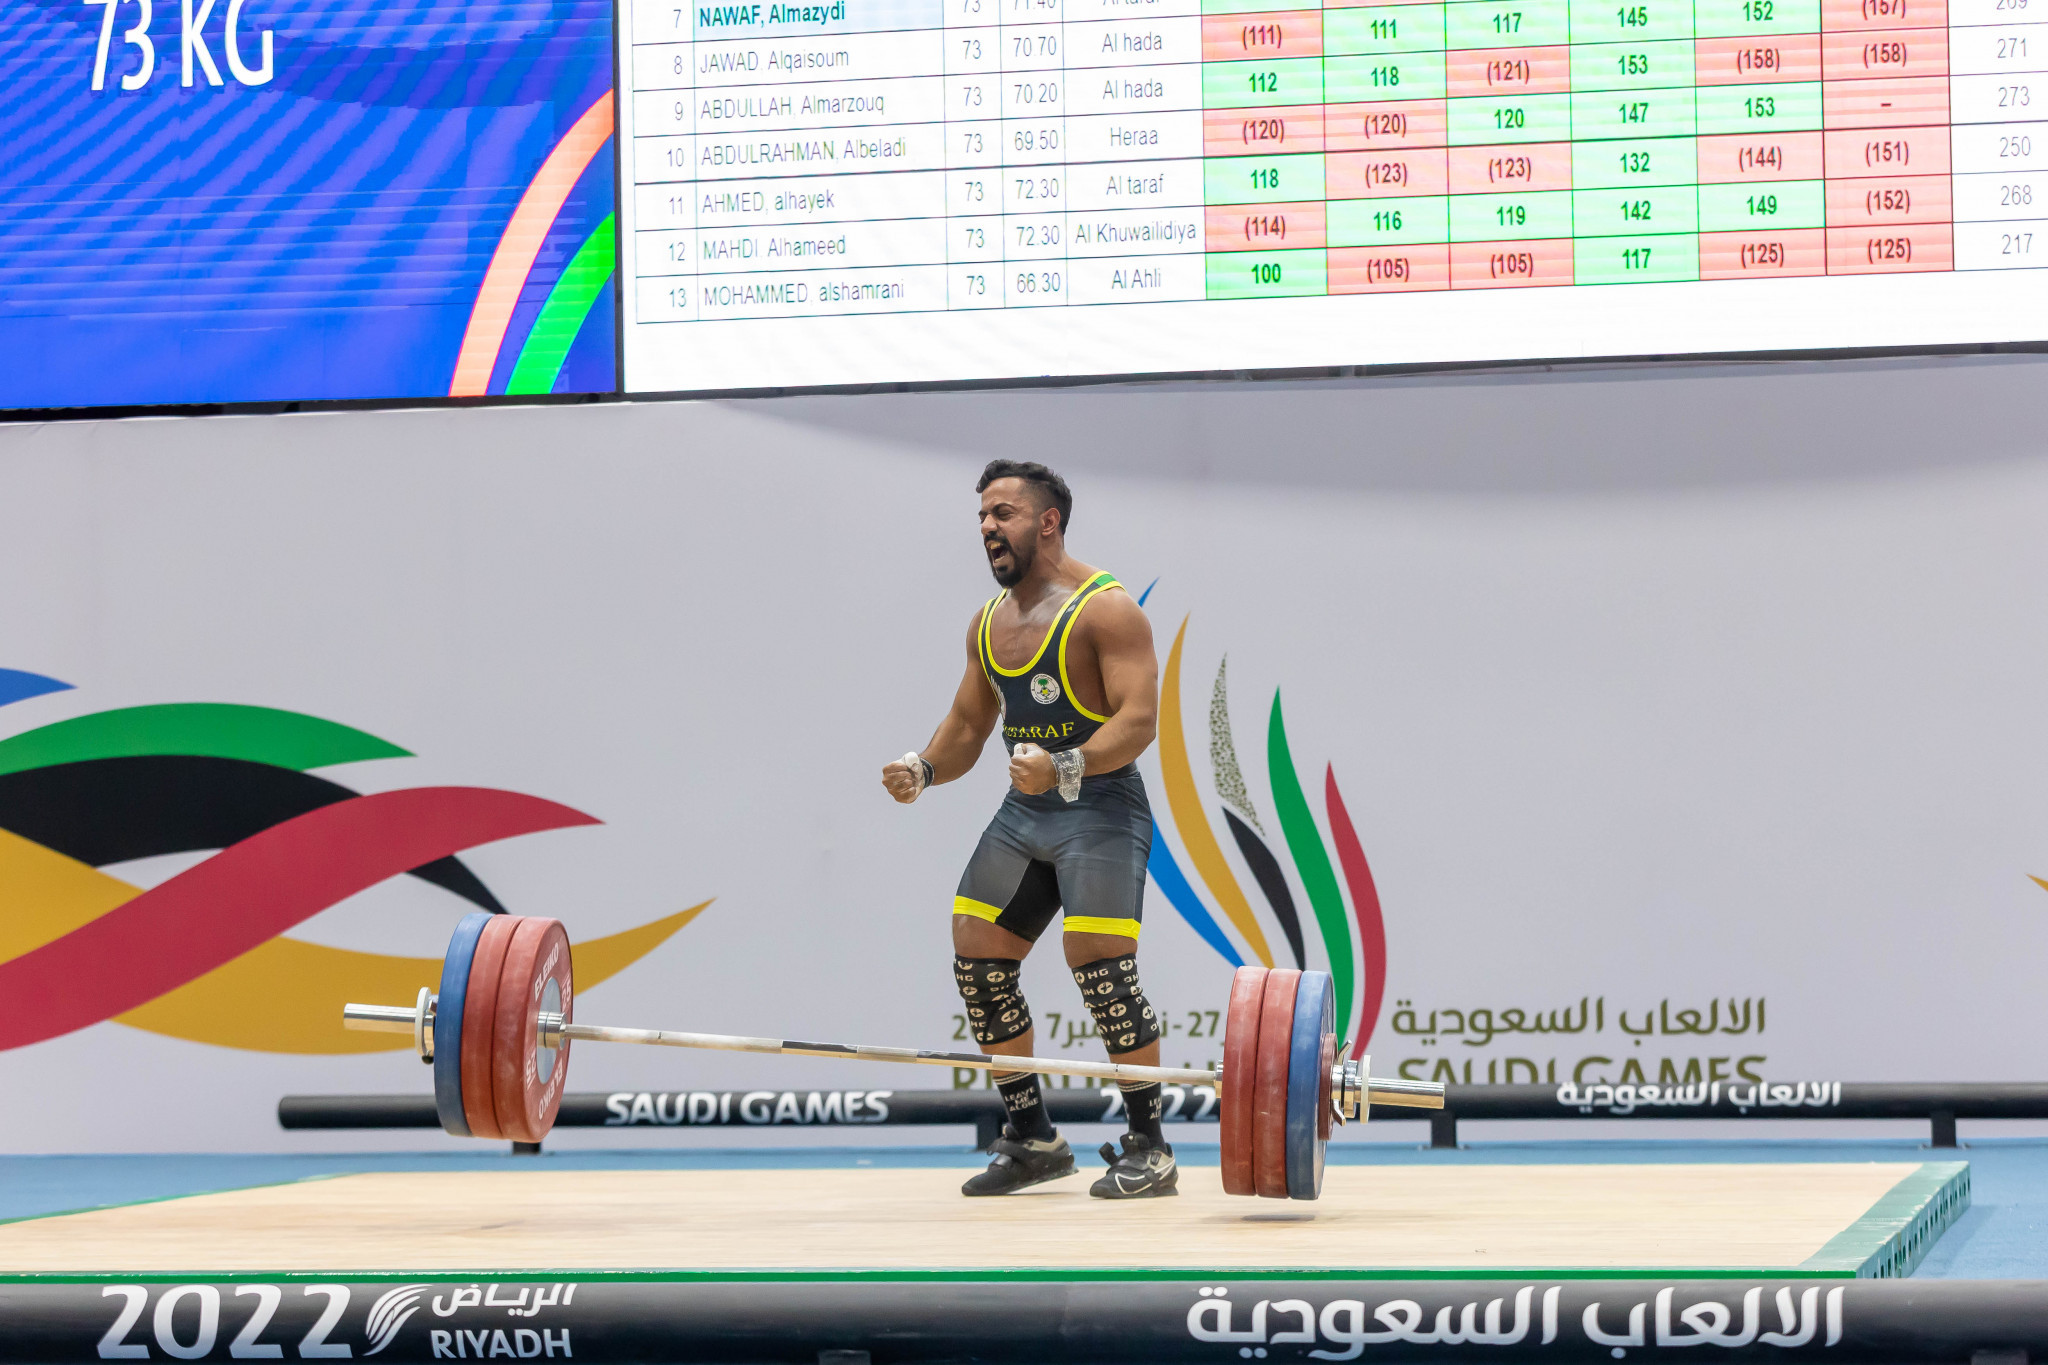 Al-Mazydi bellows following golden achievement at Saudi Games